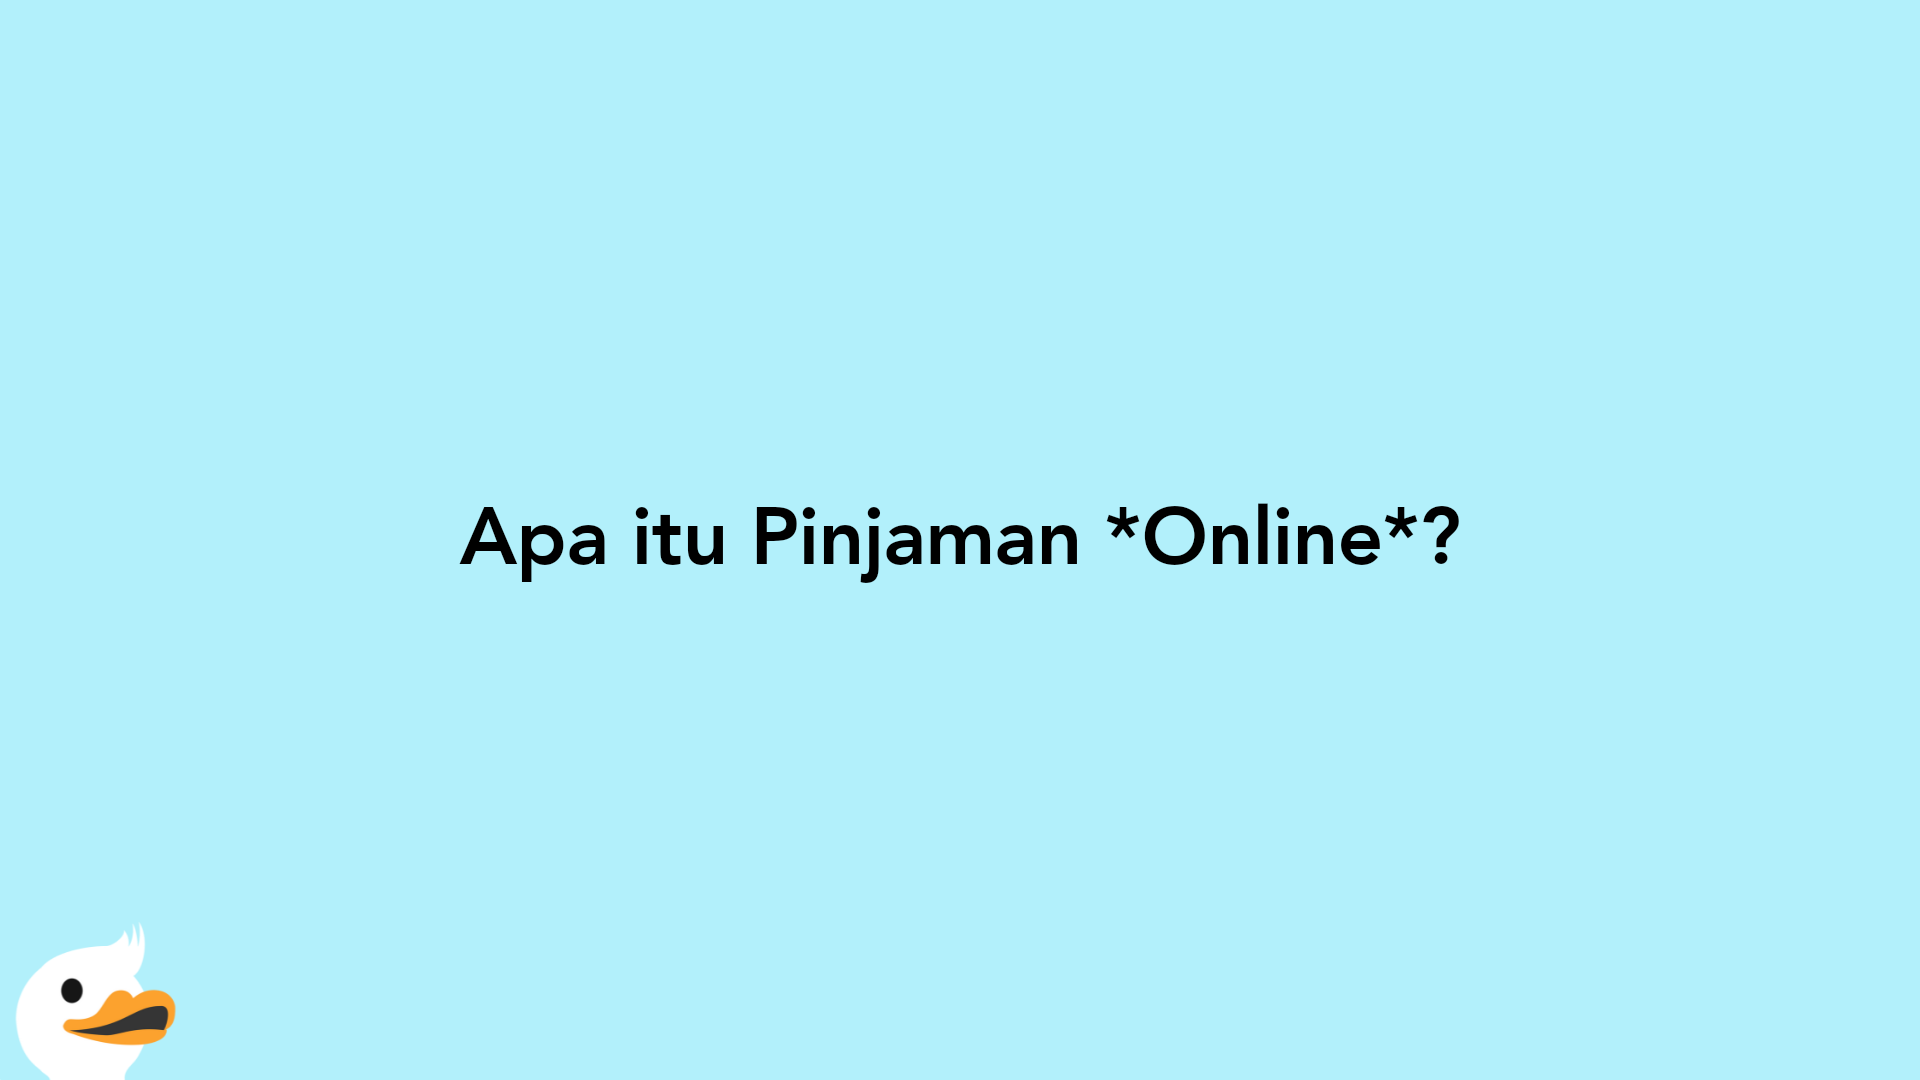 Apa itu Pinjaman Online?